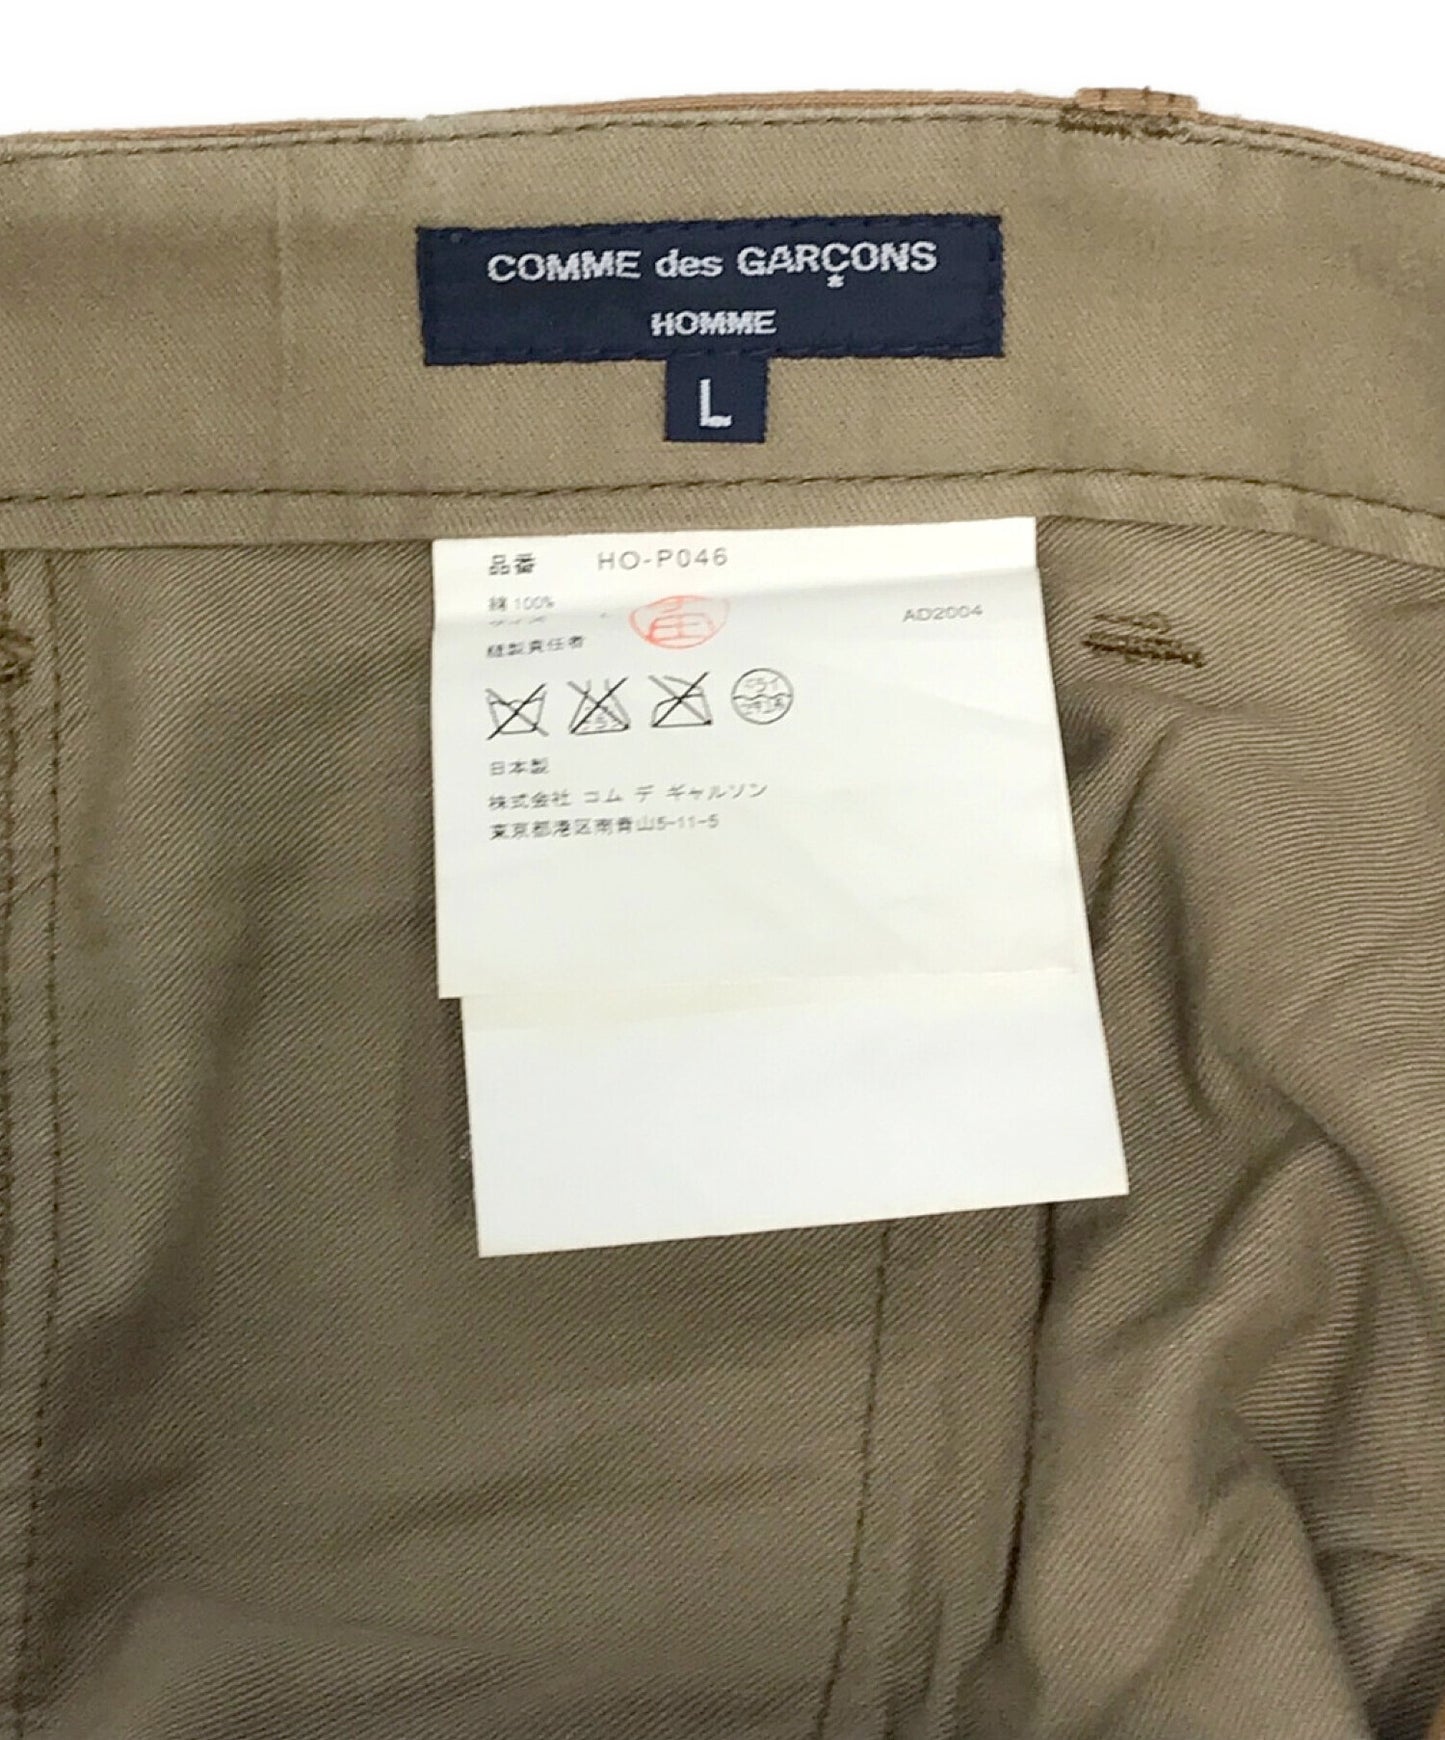 COMME des GARCONS HOMME cargo pants HO-P046